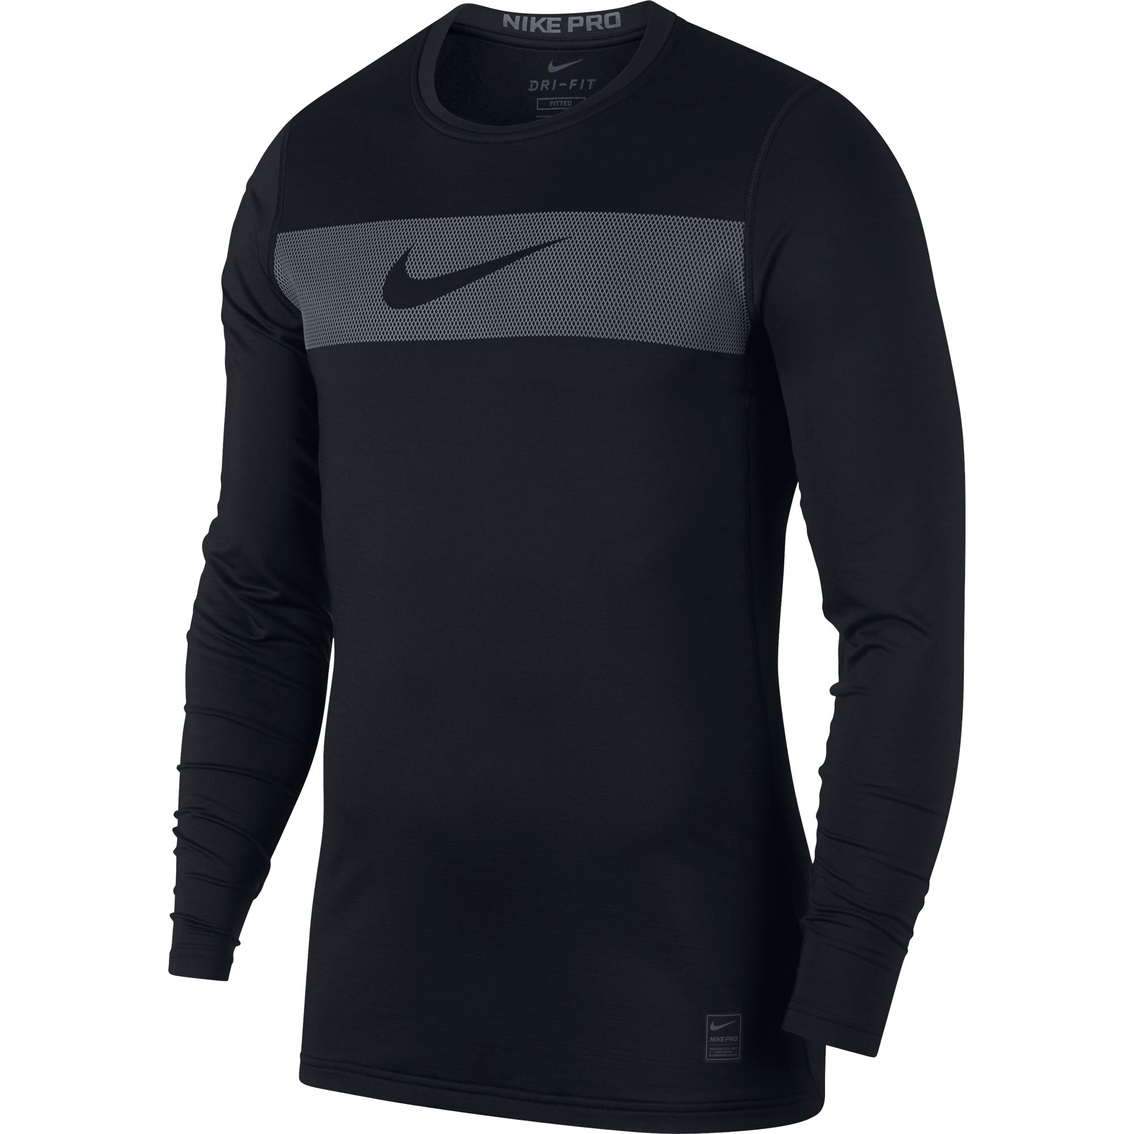 Nike Pro Warm Gfx Top | Shirts | Apparel | Shop The Exchange